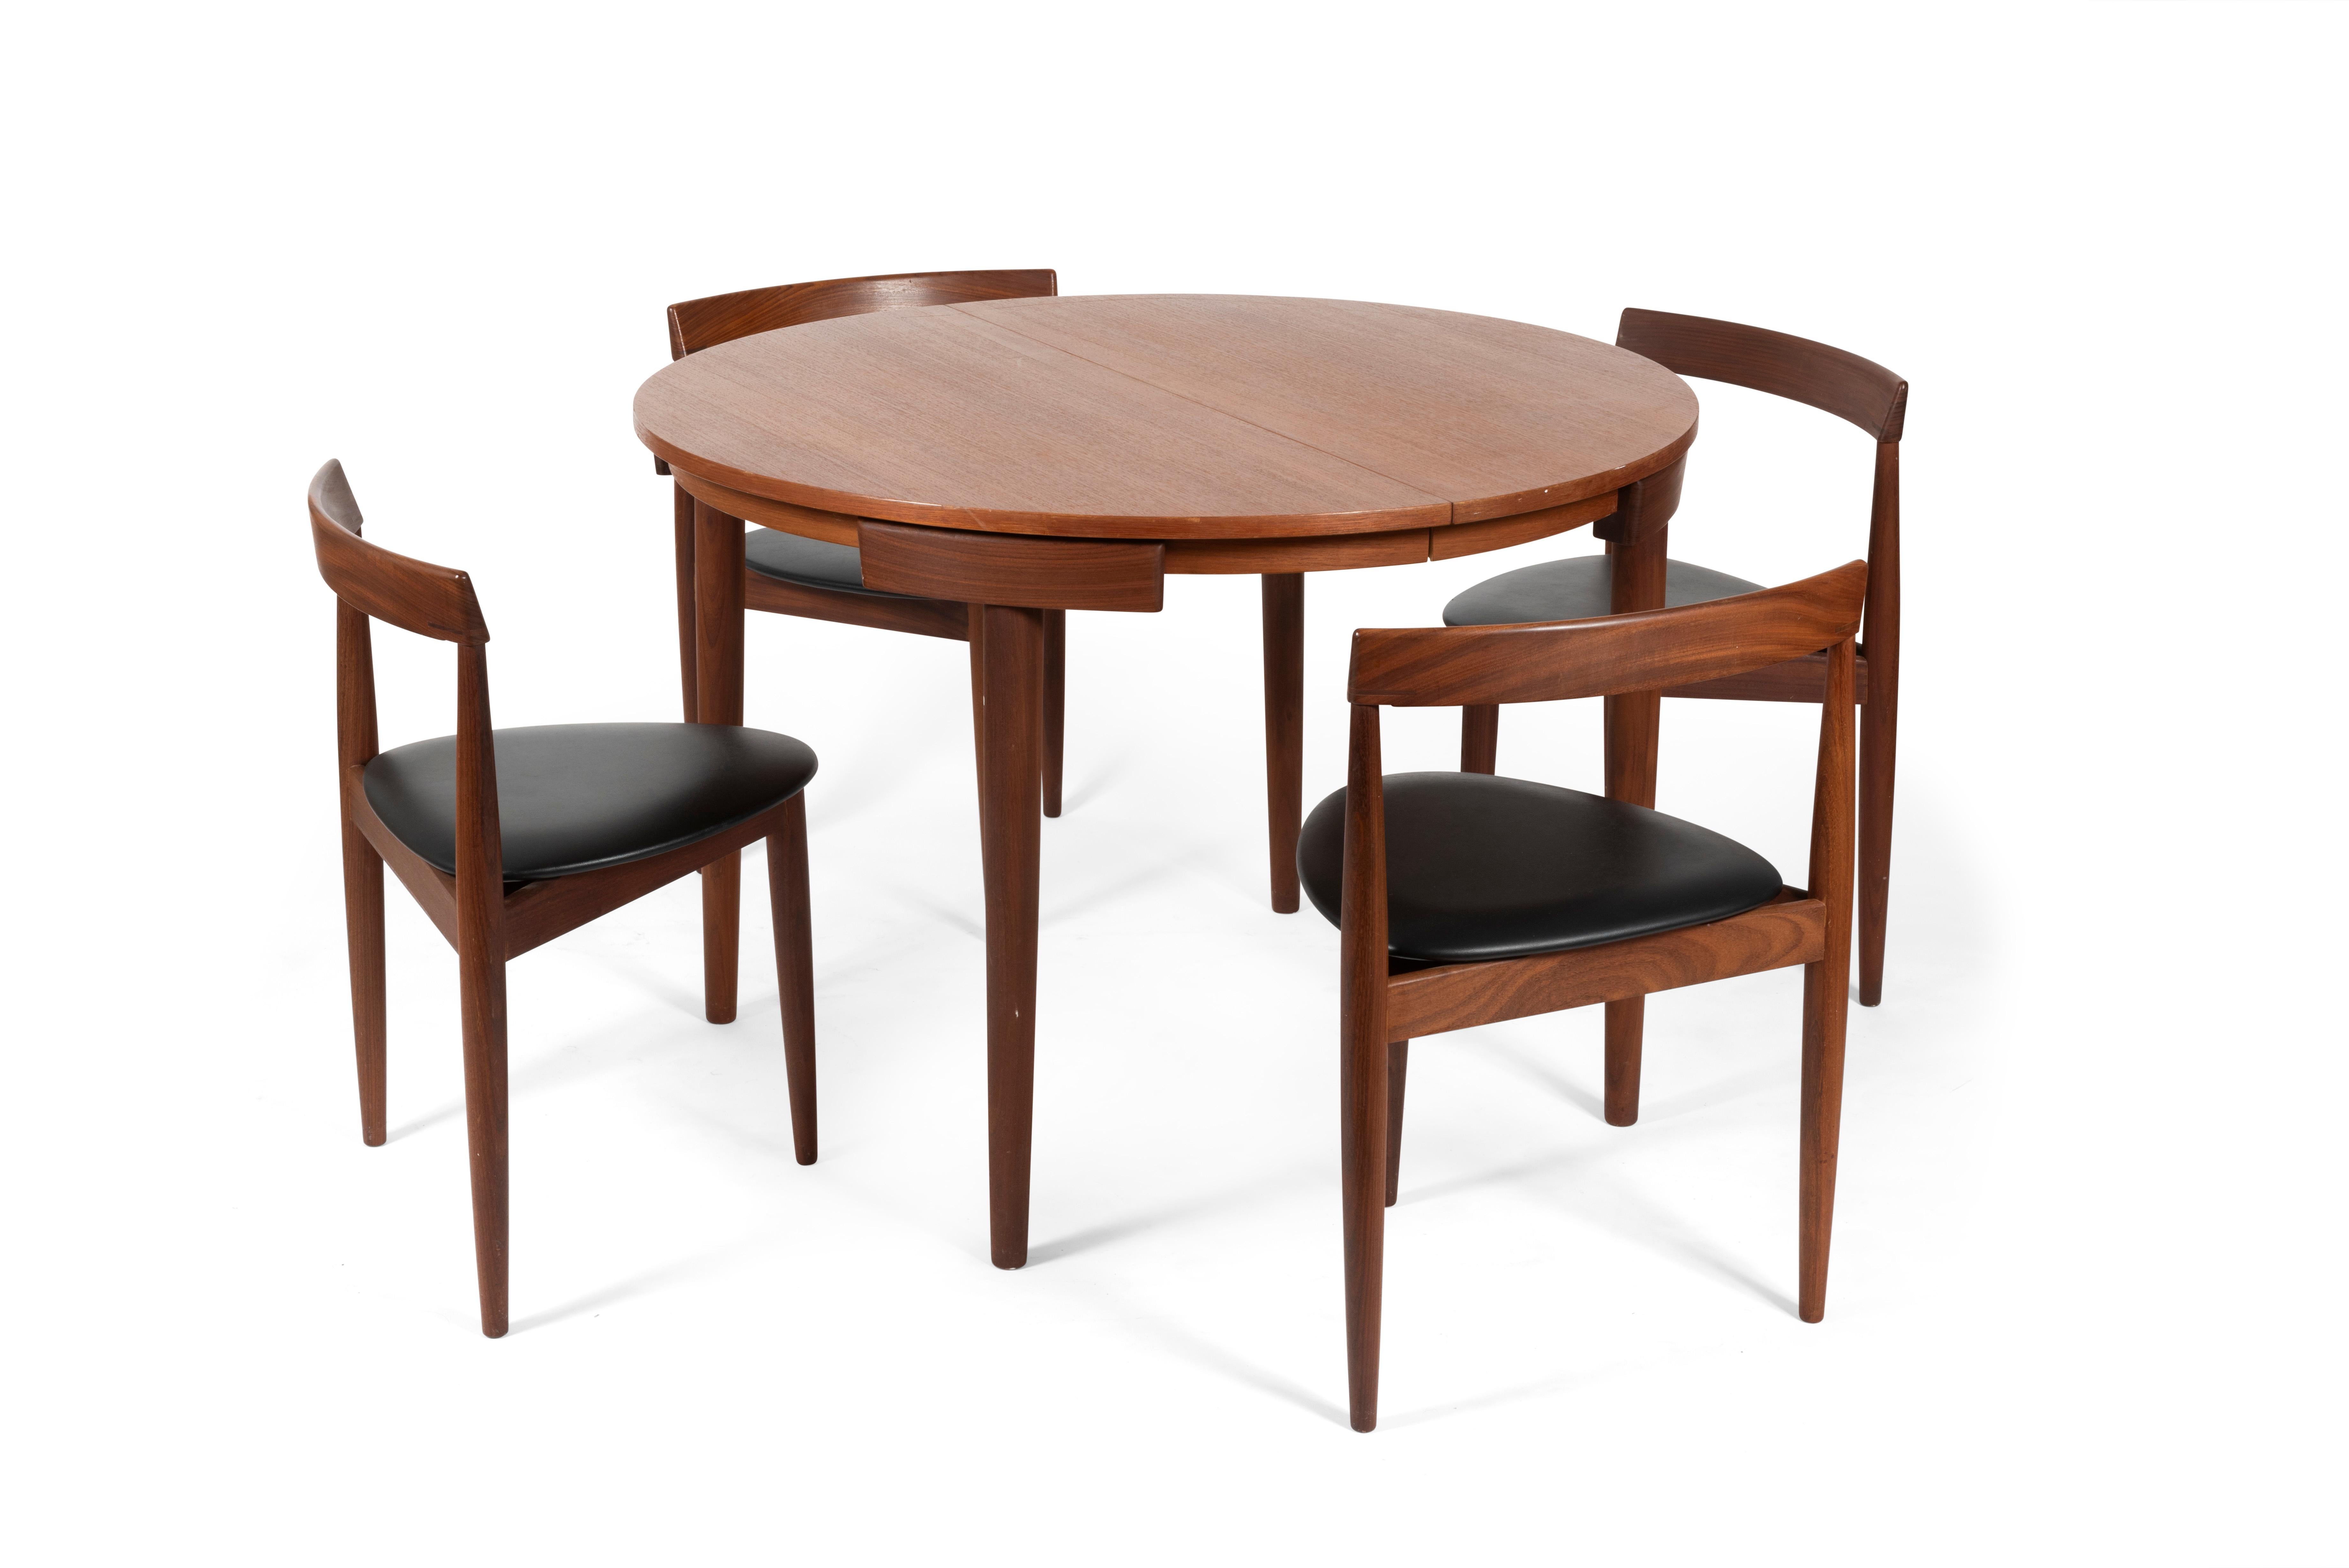 Table de salle à manger avec six chaises fabriquées par Frem Røjle et conçues par Hans Olsen, Danemark, 1950.

Les chaises ont une structure en teck avec un siège triangulaire recouvert de cuir naturel noir et les dossiers s’intègrent parfaitement à